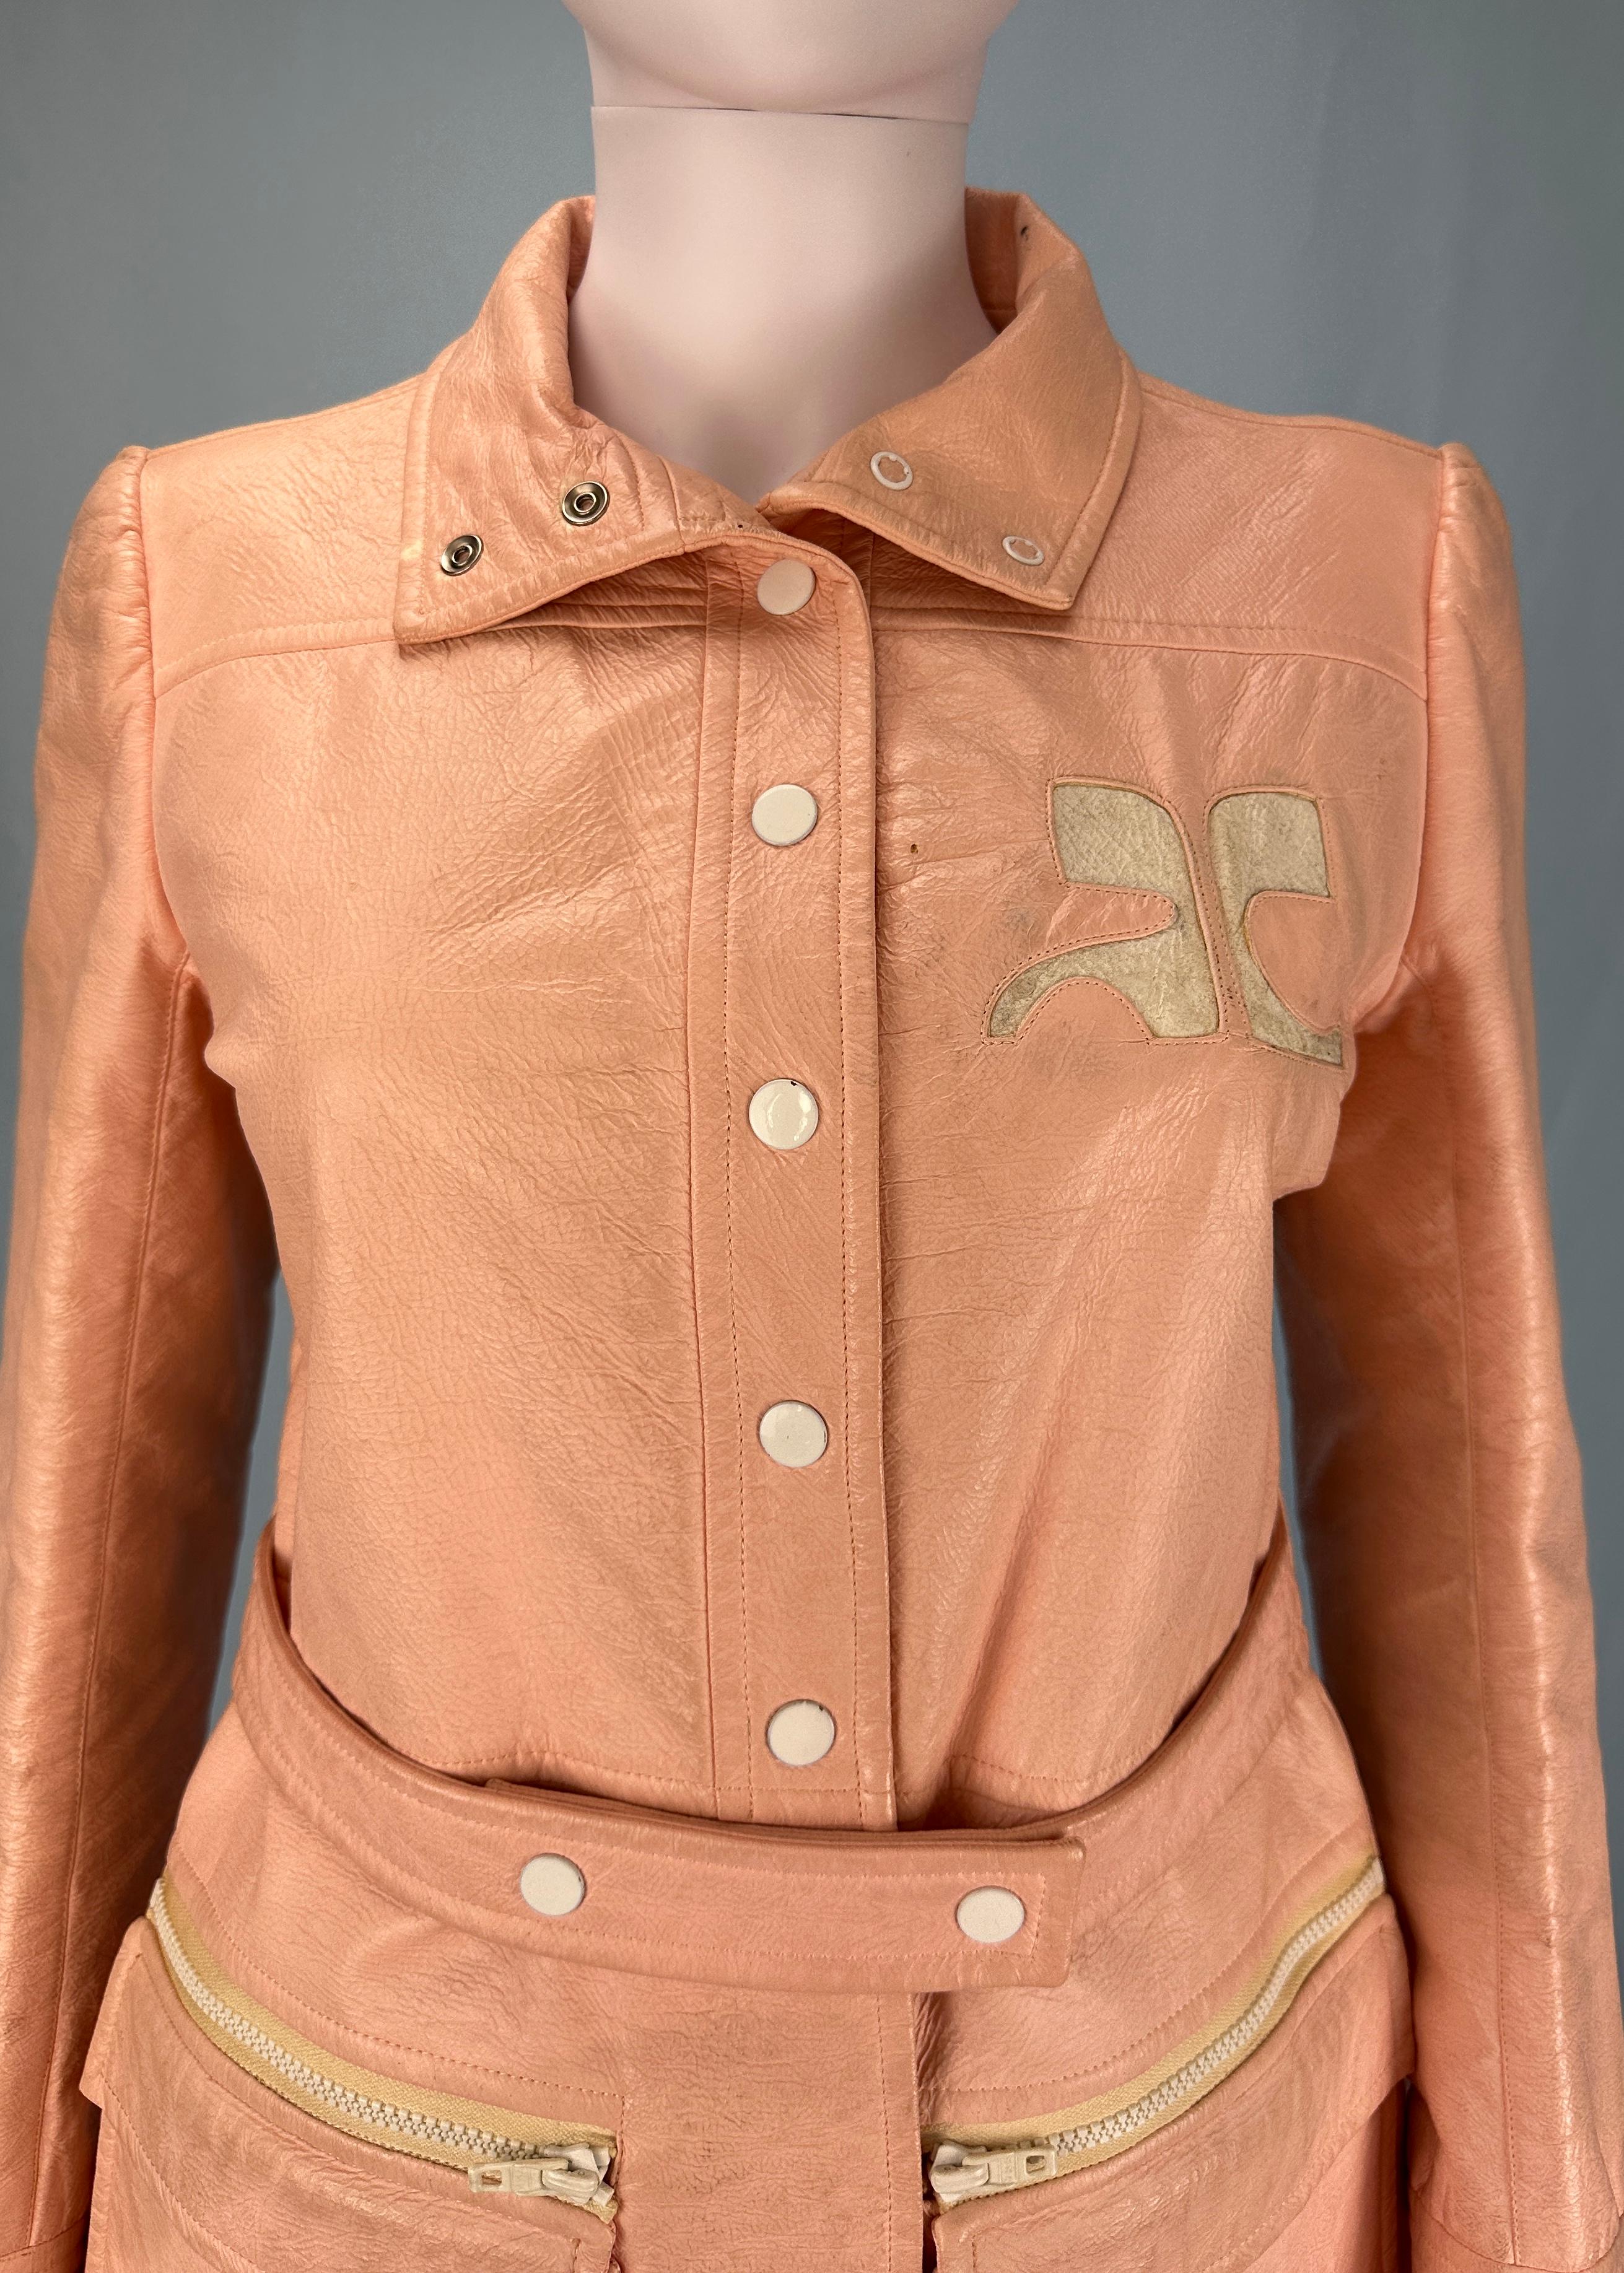 Vintage Courrèges 
1963-1969

Veste en vinyle rose pêche 
Grand logo Courrèges 
Peut être porté comme une veste ou une robe
Ceinture (amovible) 
Boutons de fermeture

Label couture numéroté 
Taille 